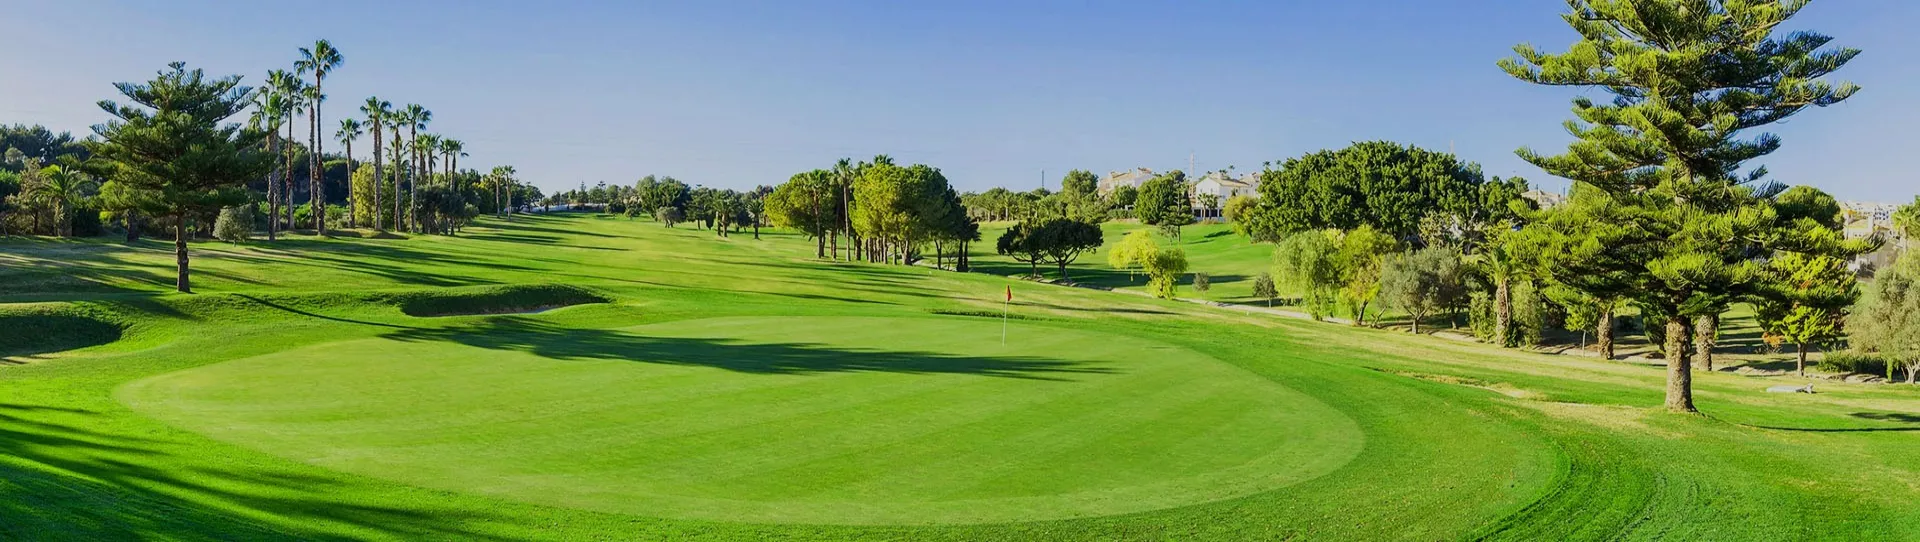 Spain golf courses - Campoamor Golf Course - Photo 3